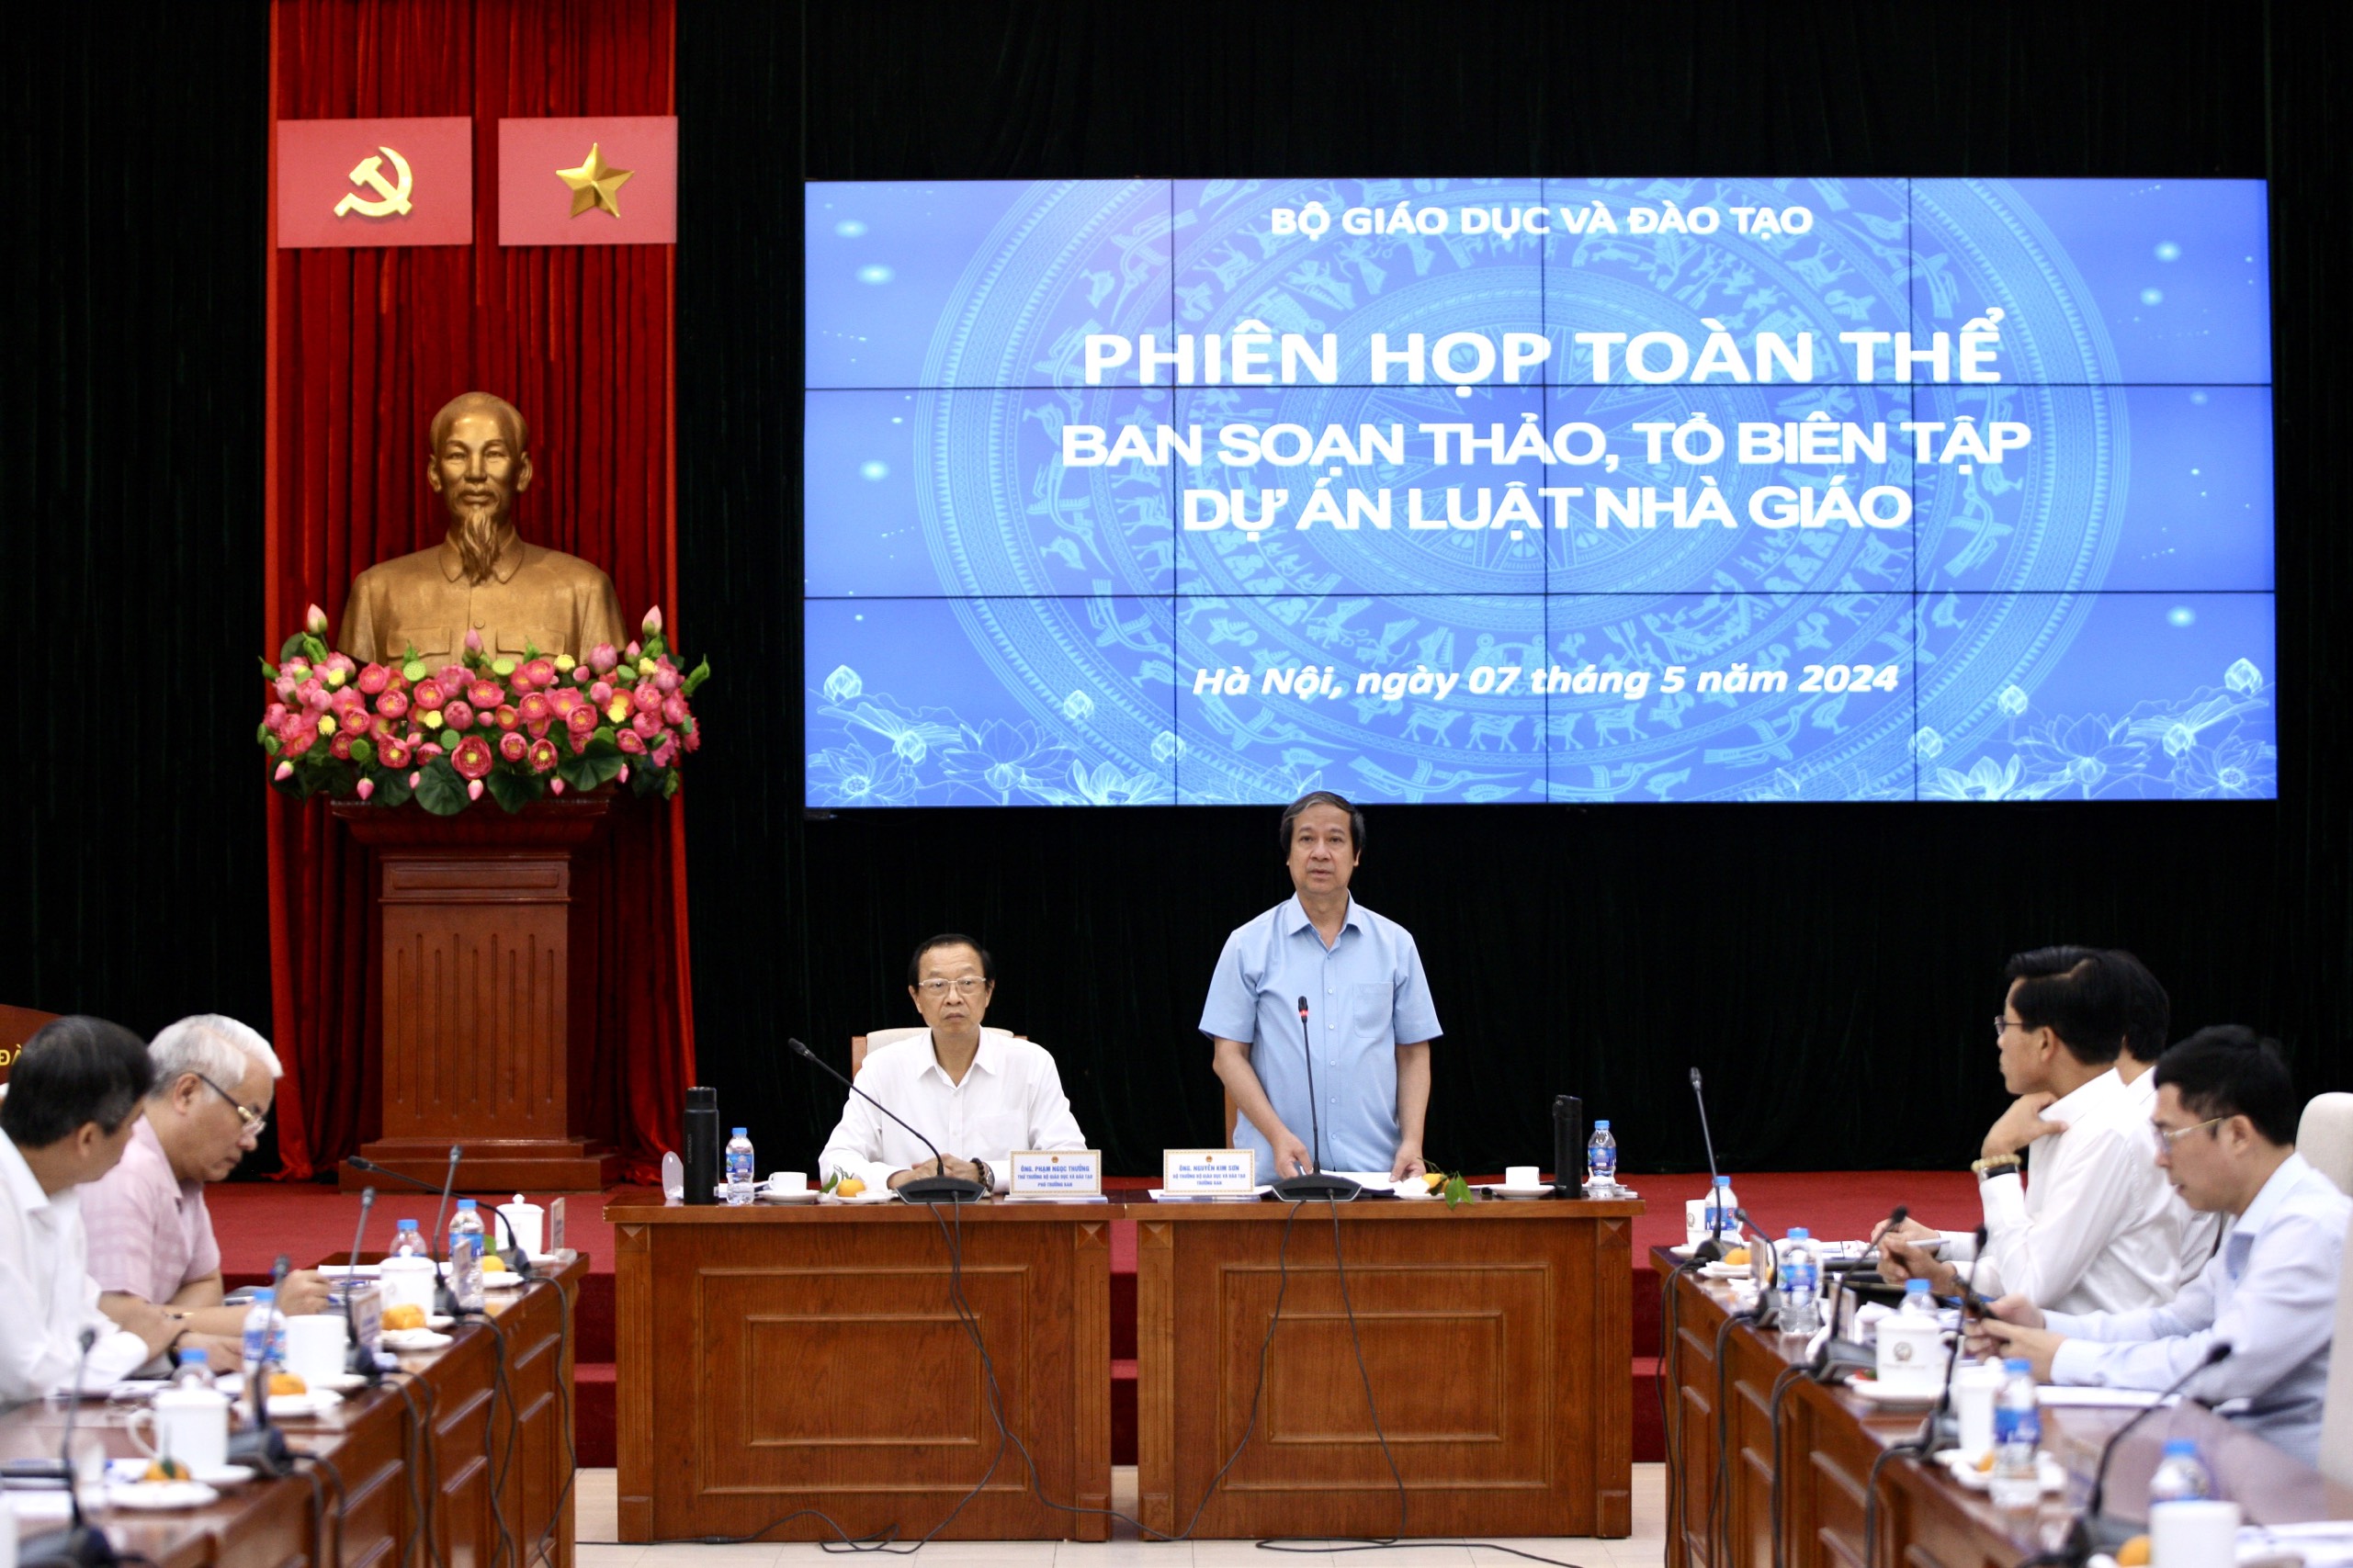 Bộ trưởng Bộ GD&ĐT Nguyễn Kim Sơn phát biểu kết luận phiên họp.